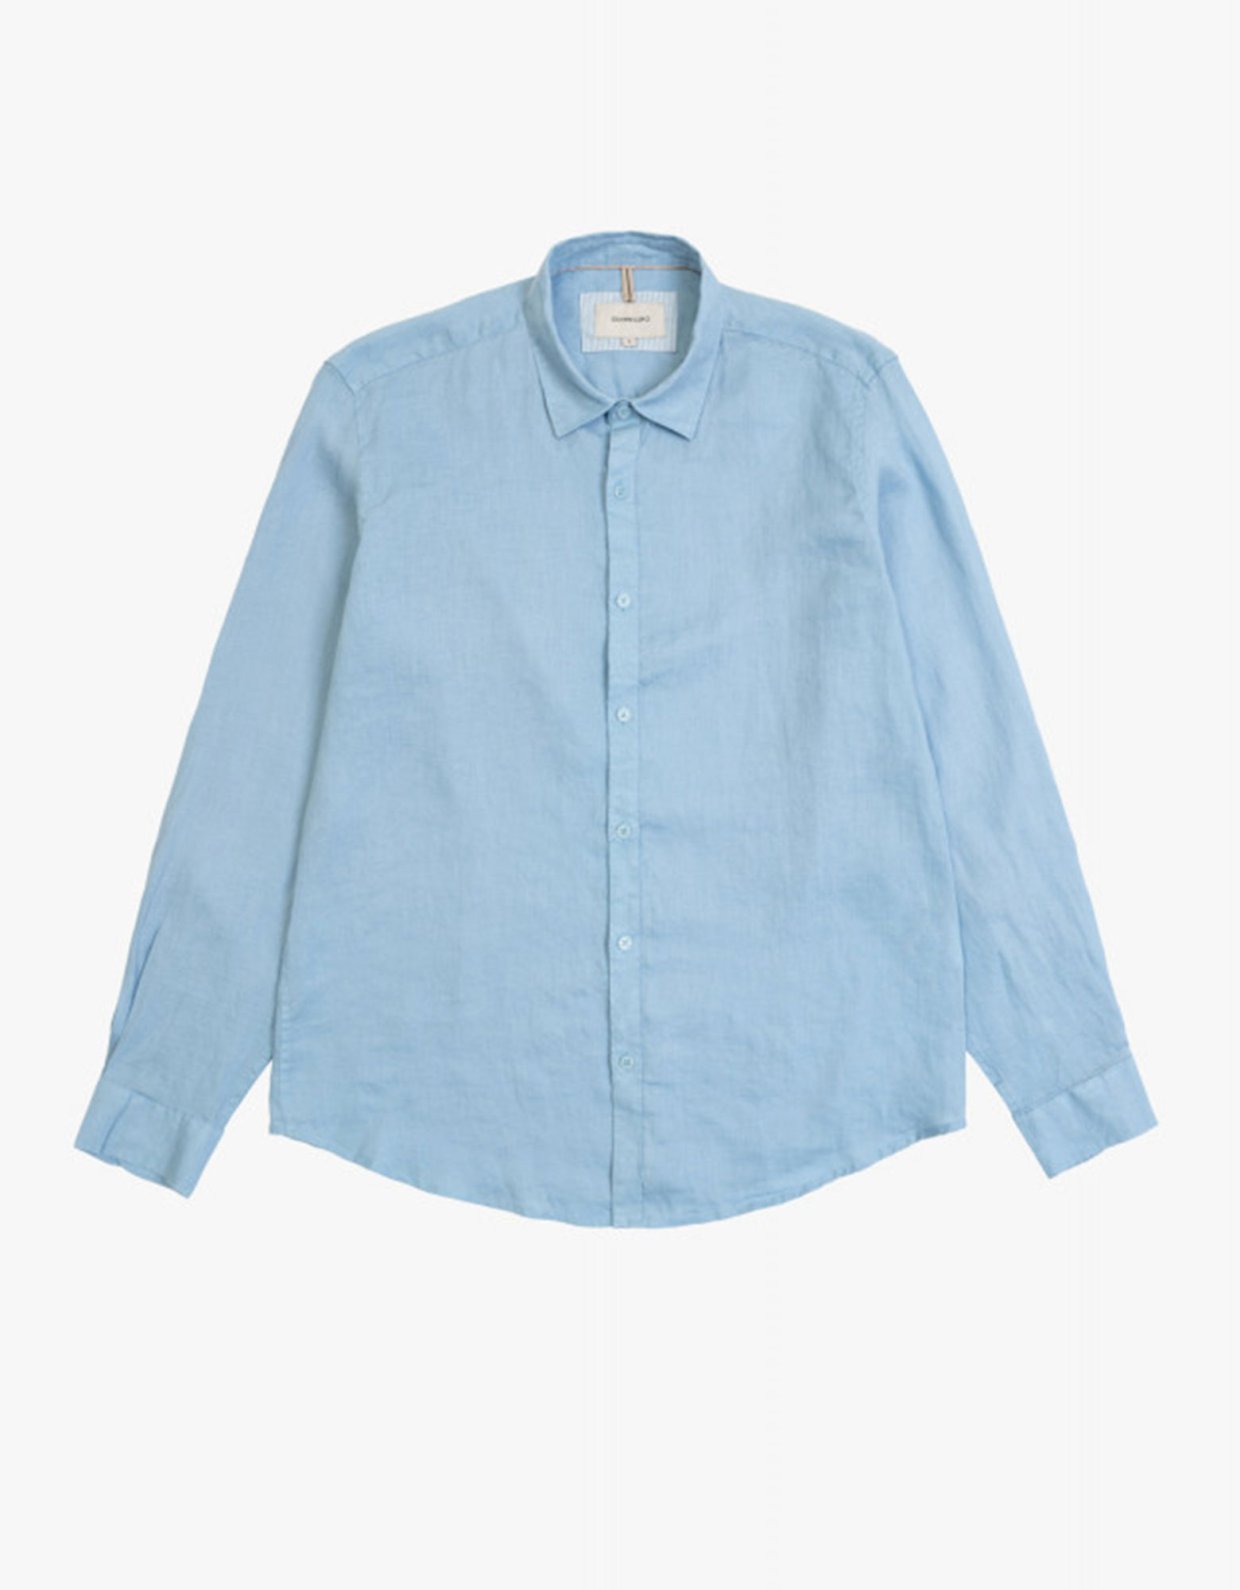 Gianni Lupo Linen shirt light blue